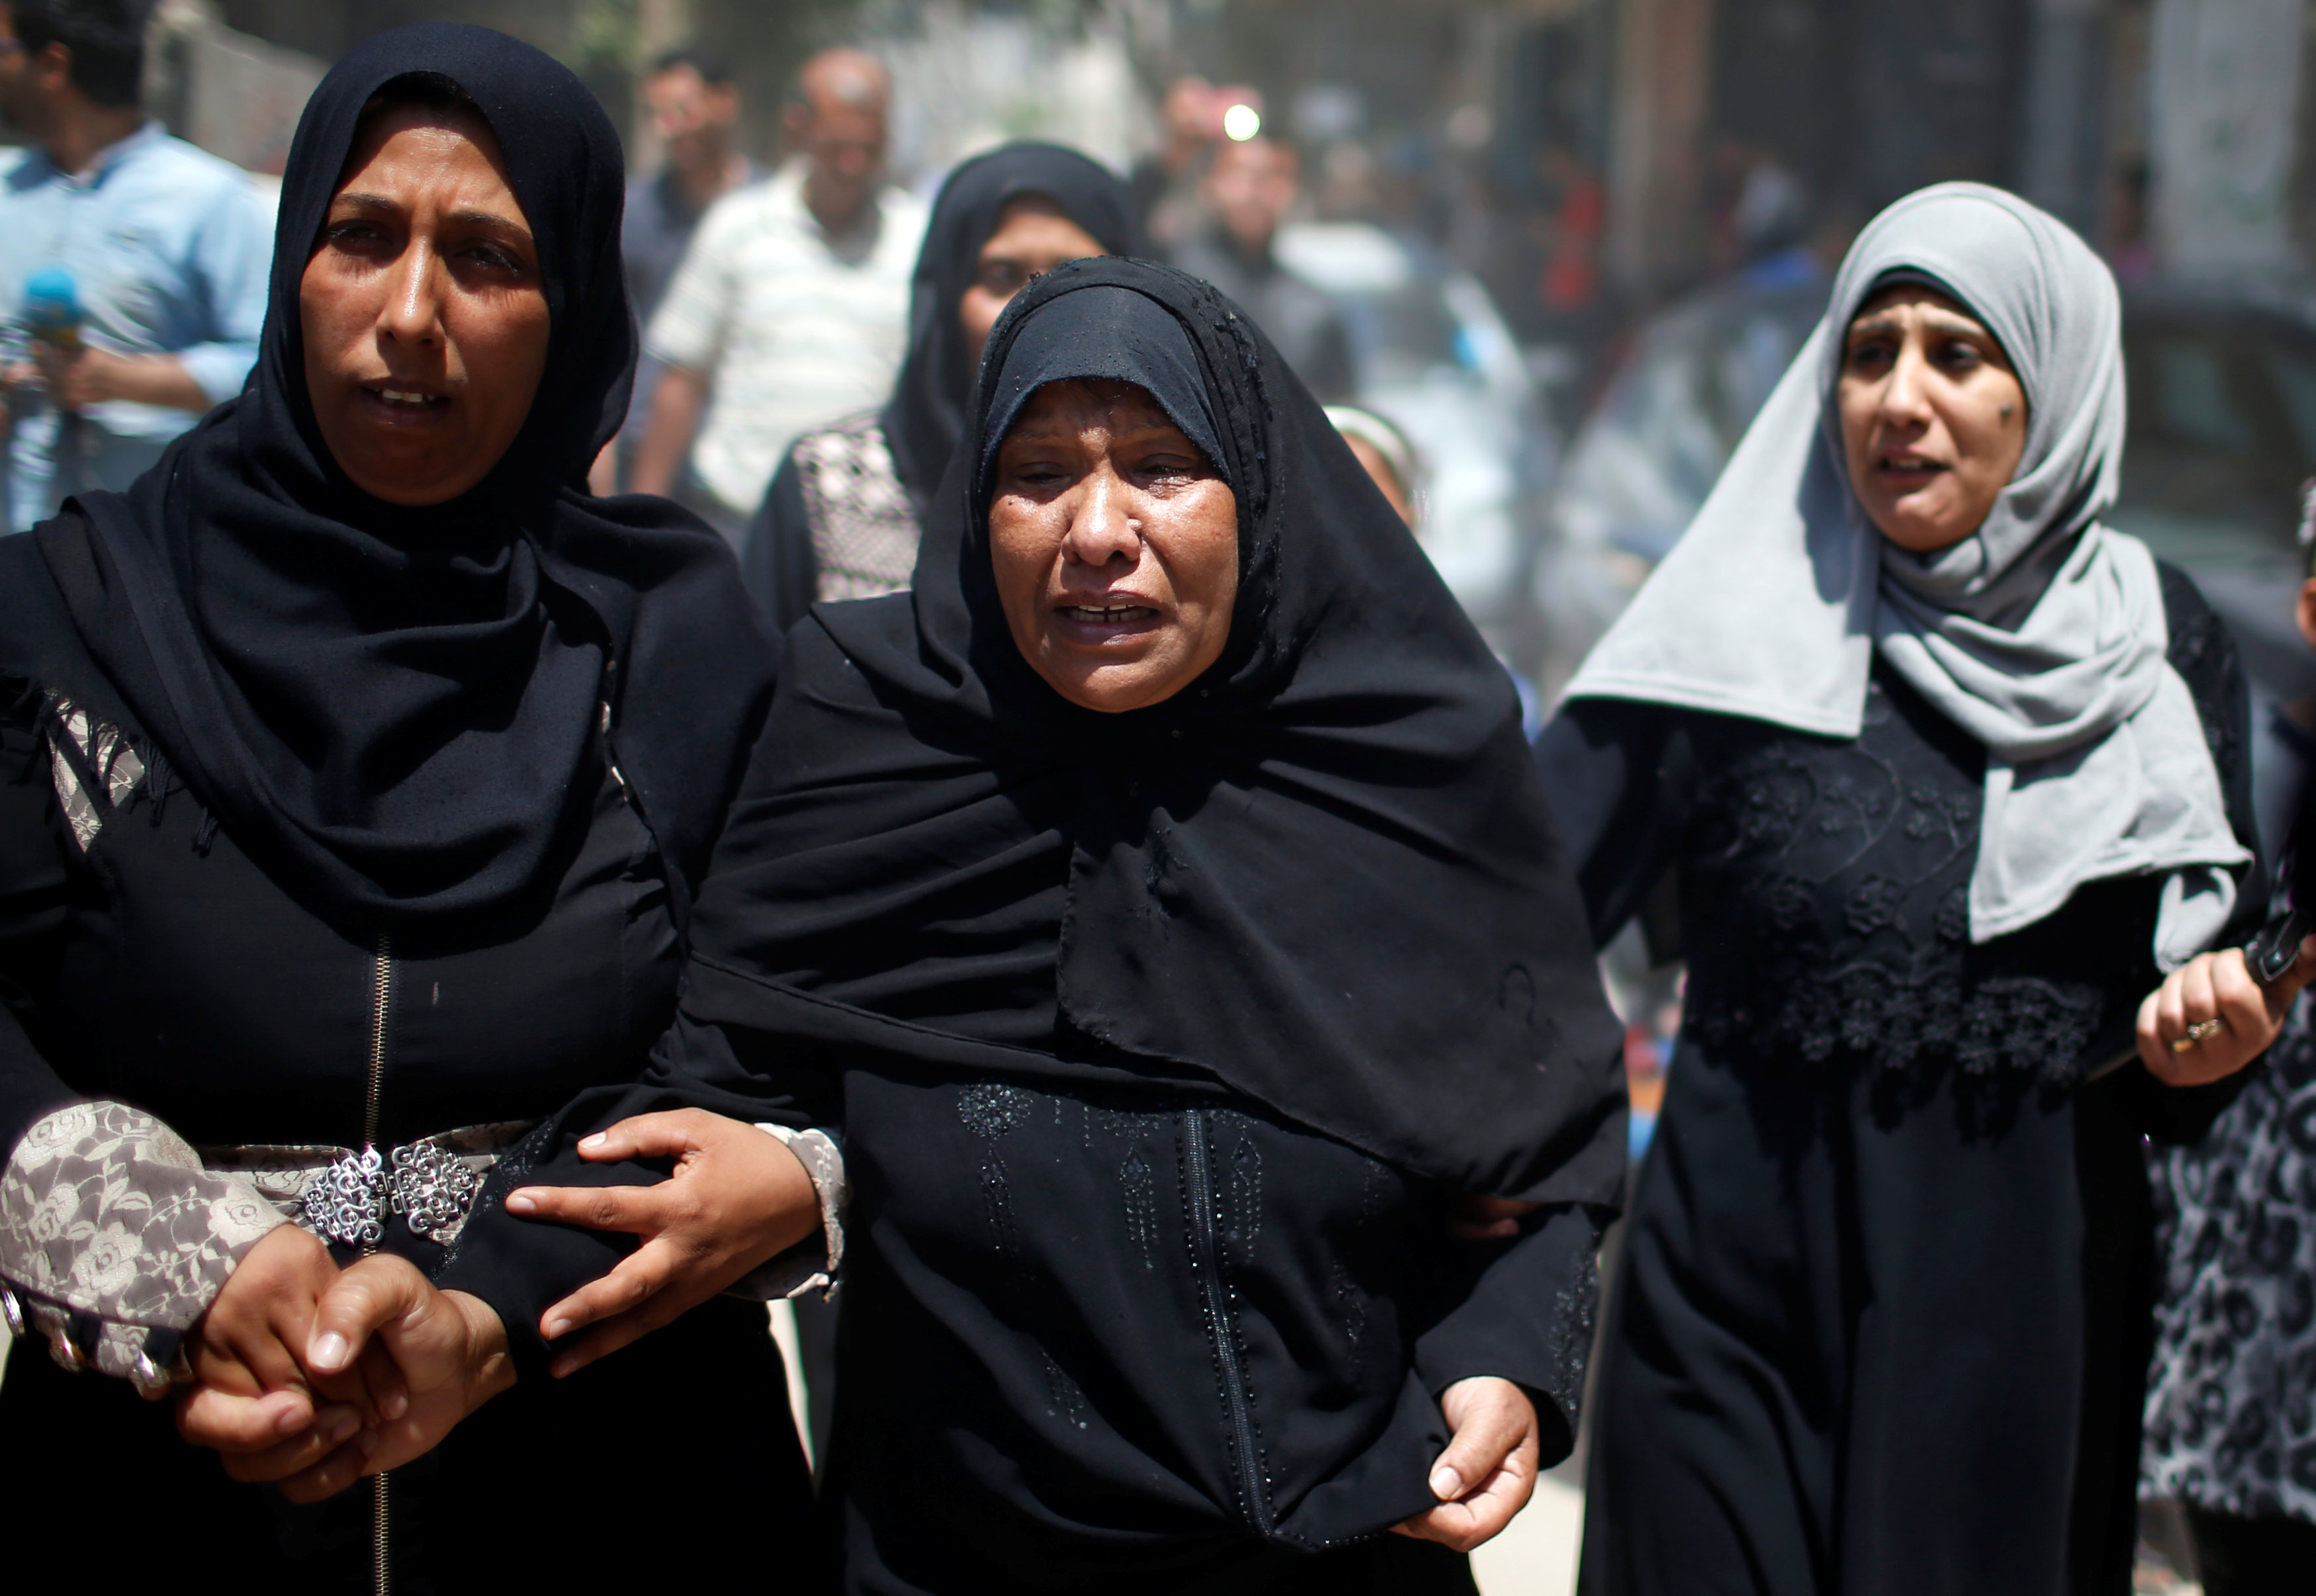 هكذا وصف مصور رويترز مجزرة غزة.. "الموت يسكن هنا"